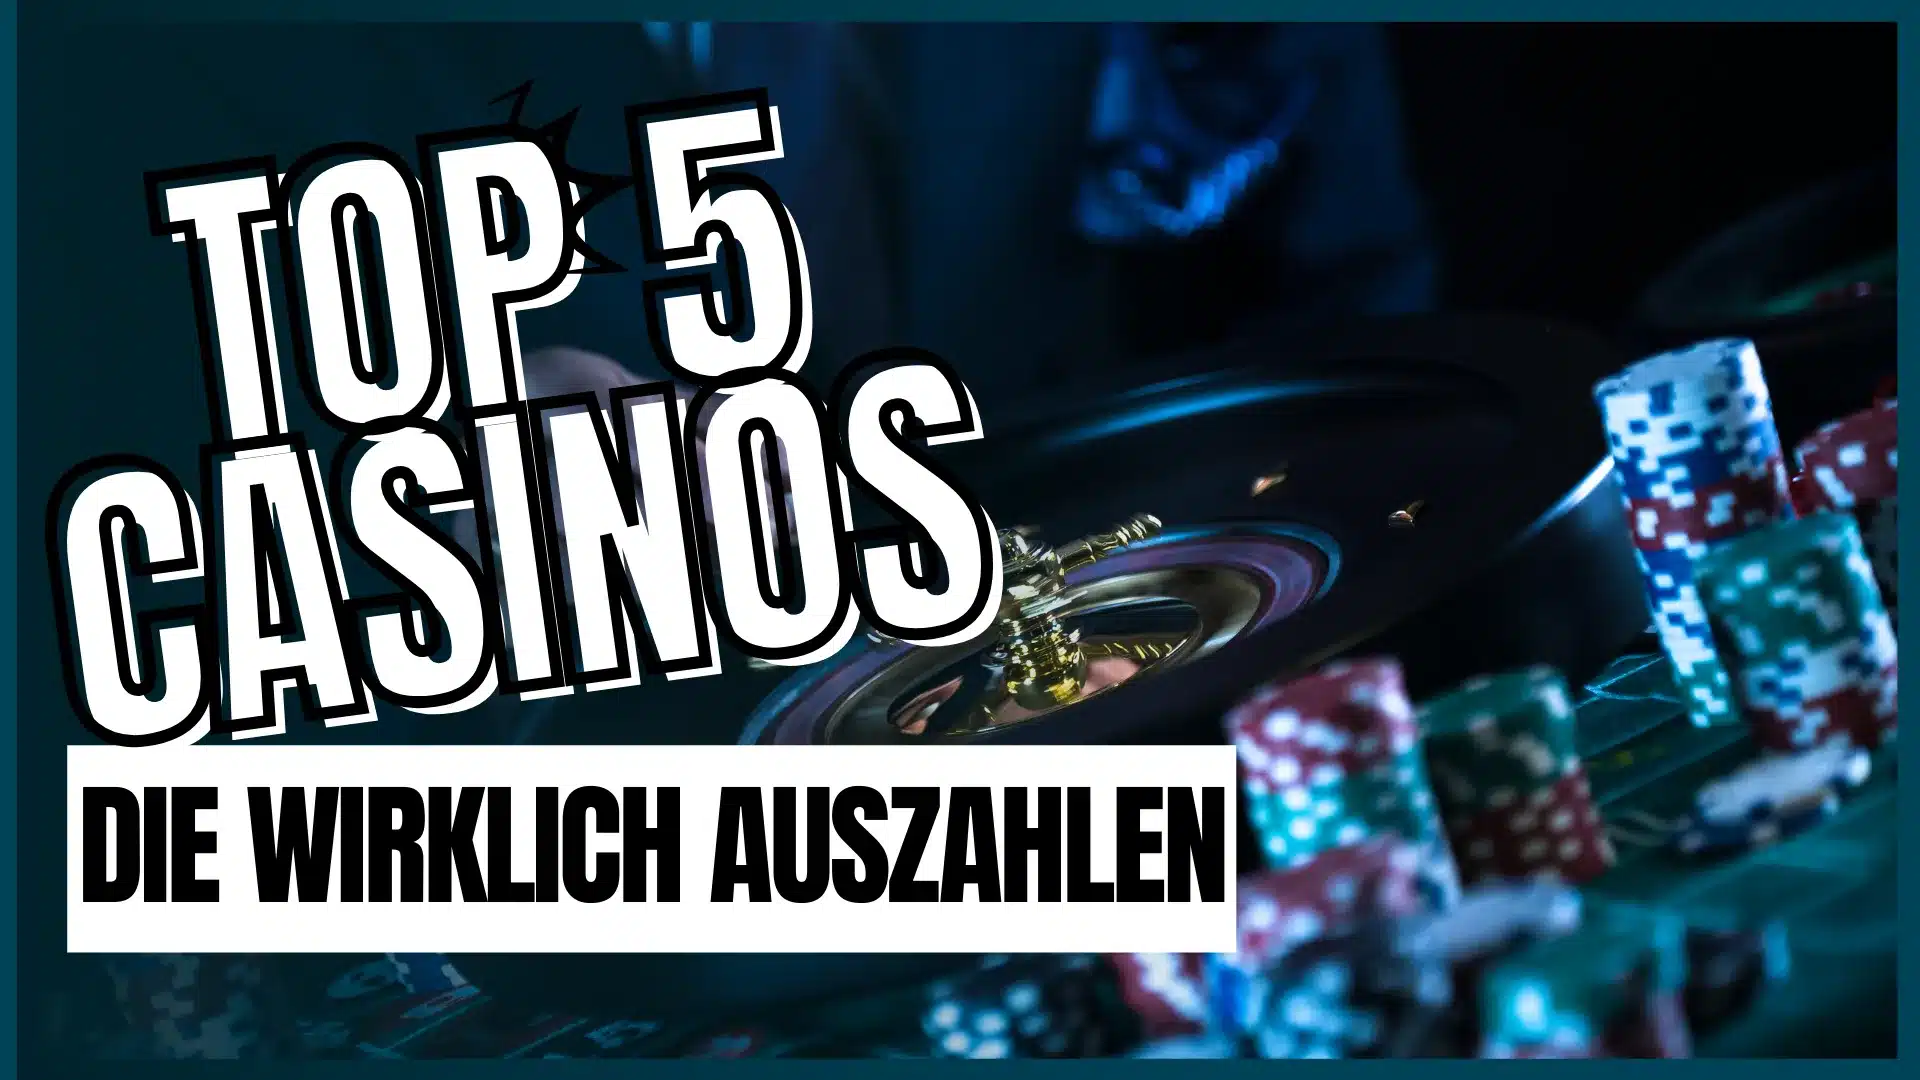 Welches Online Casino zahlt wirklich aus? – Top 5 Casinos.